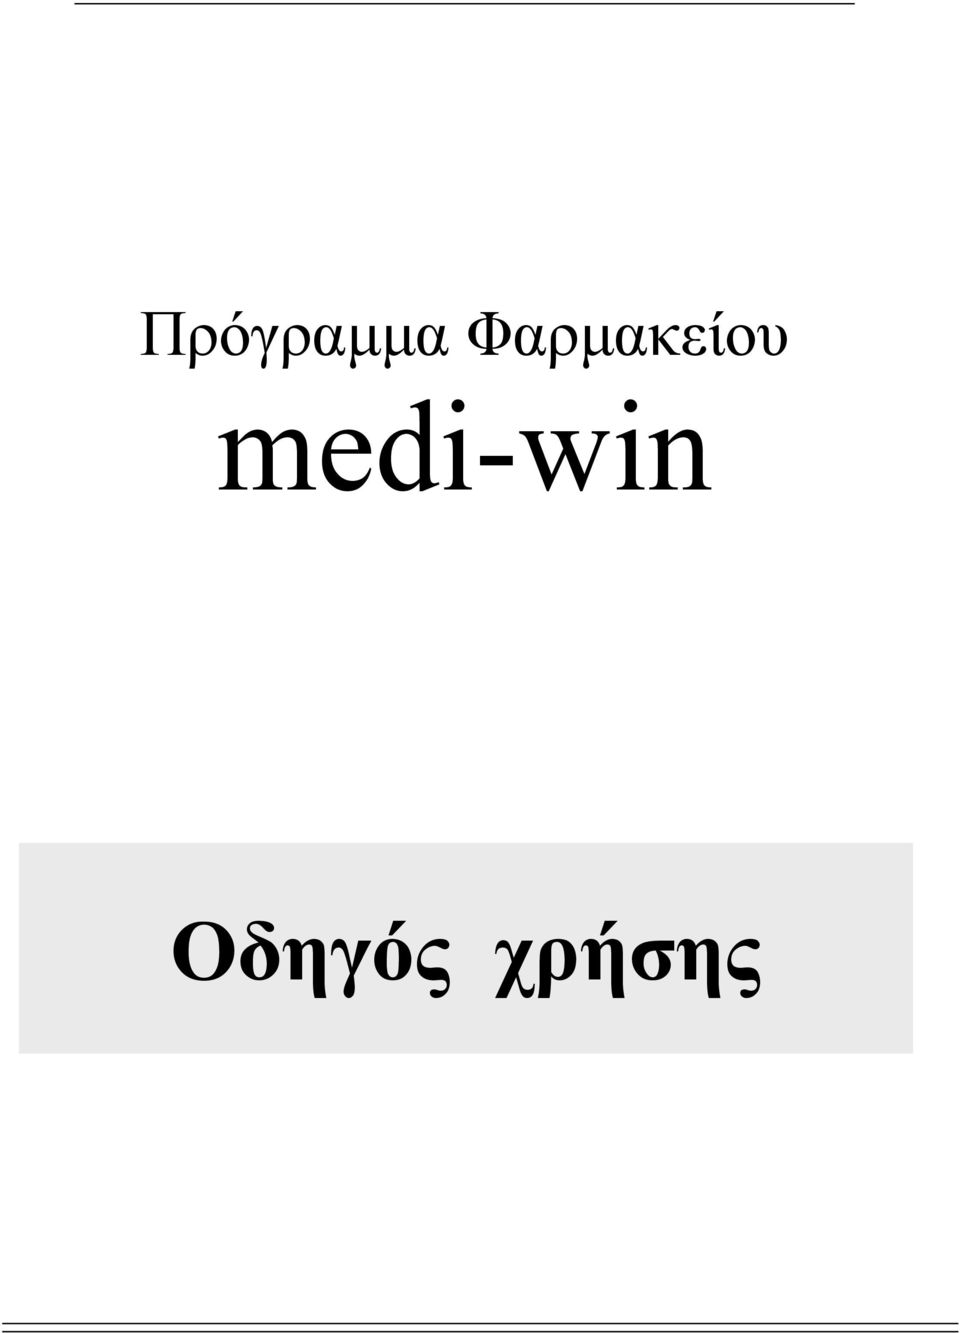 medi-win